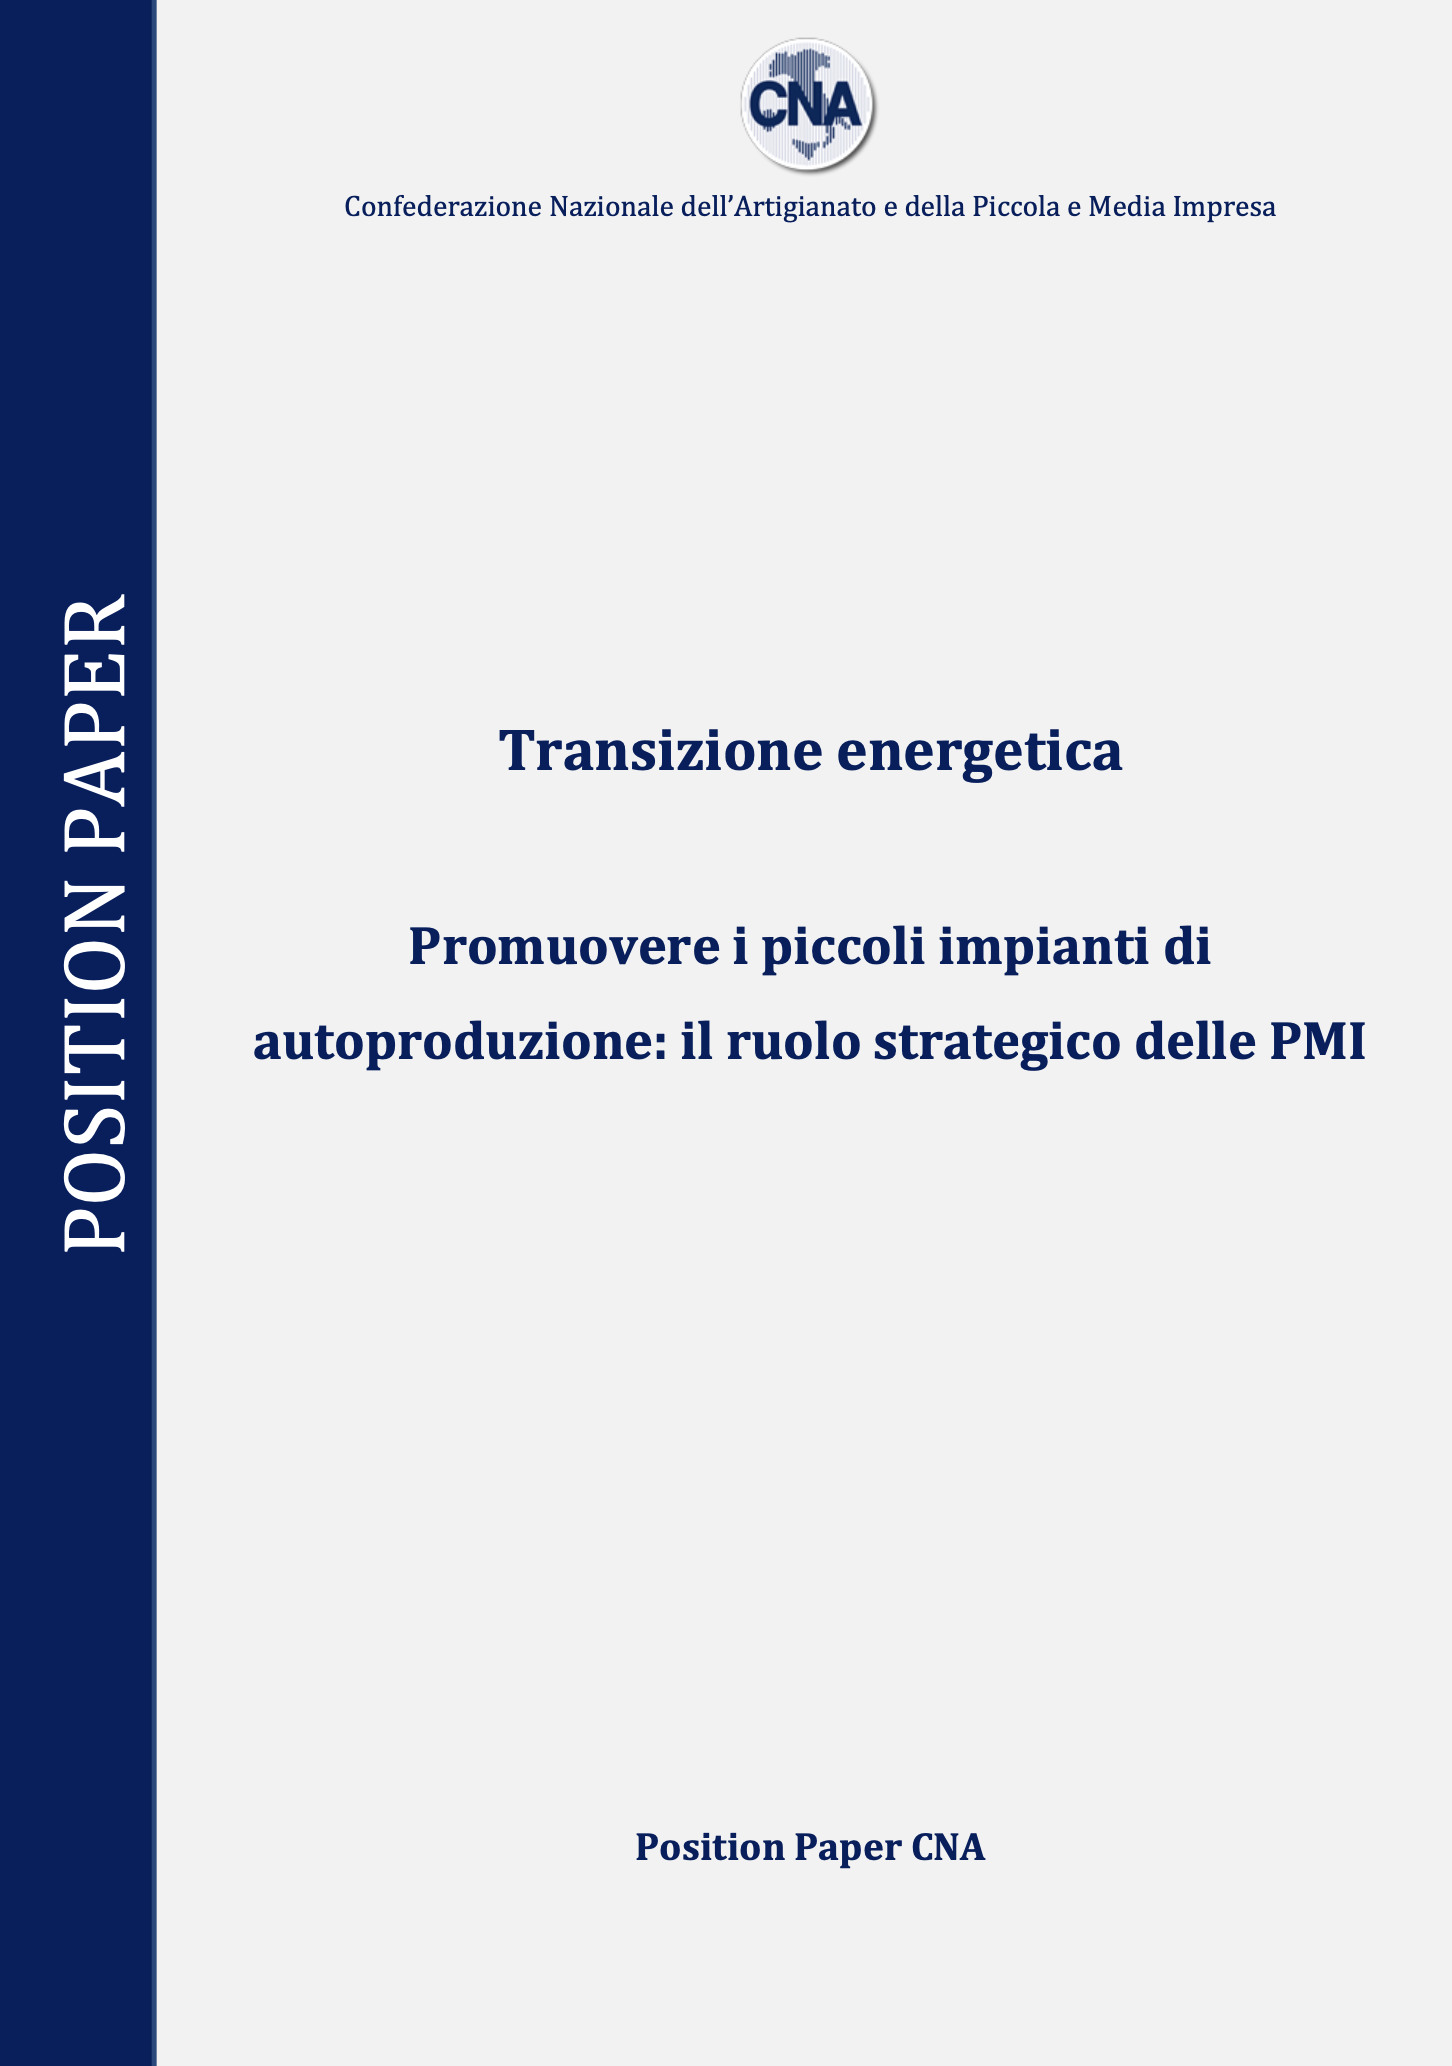 Transizione energetica – Promuovere i piccoli impianti di autoproduzione: il ruolo strategico delle PMI